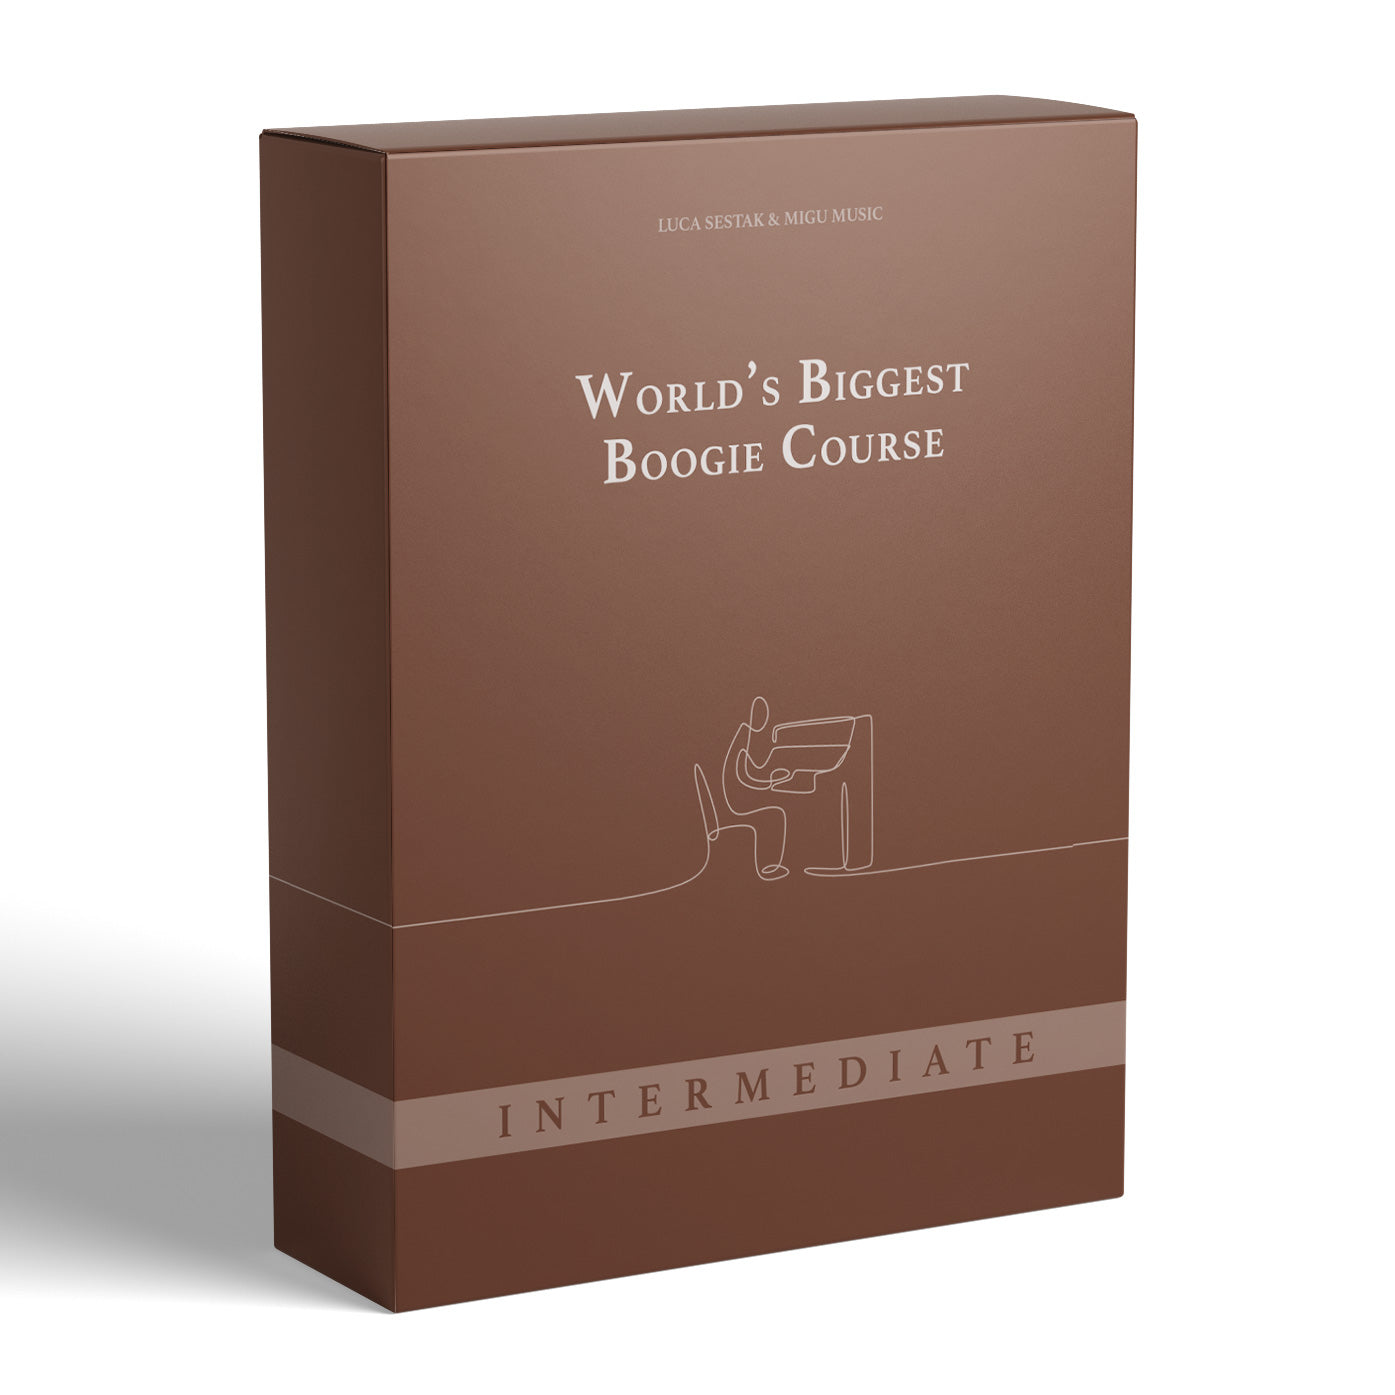 Boogie Course - Intermediate